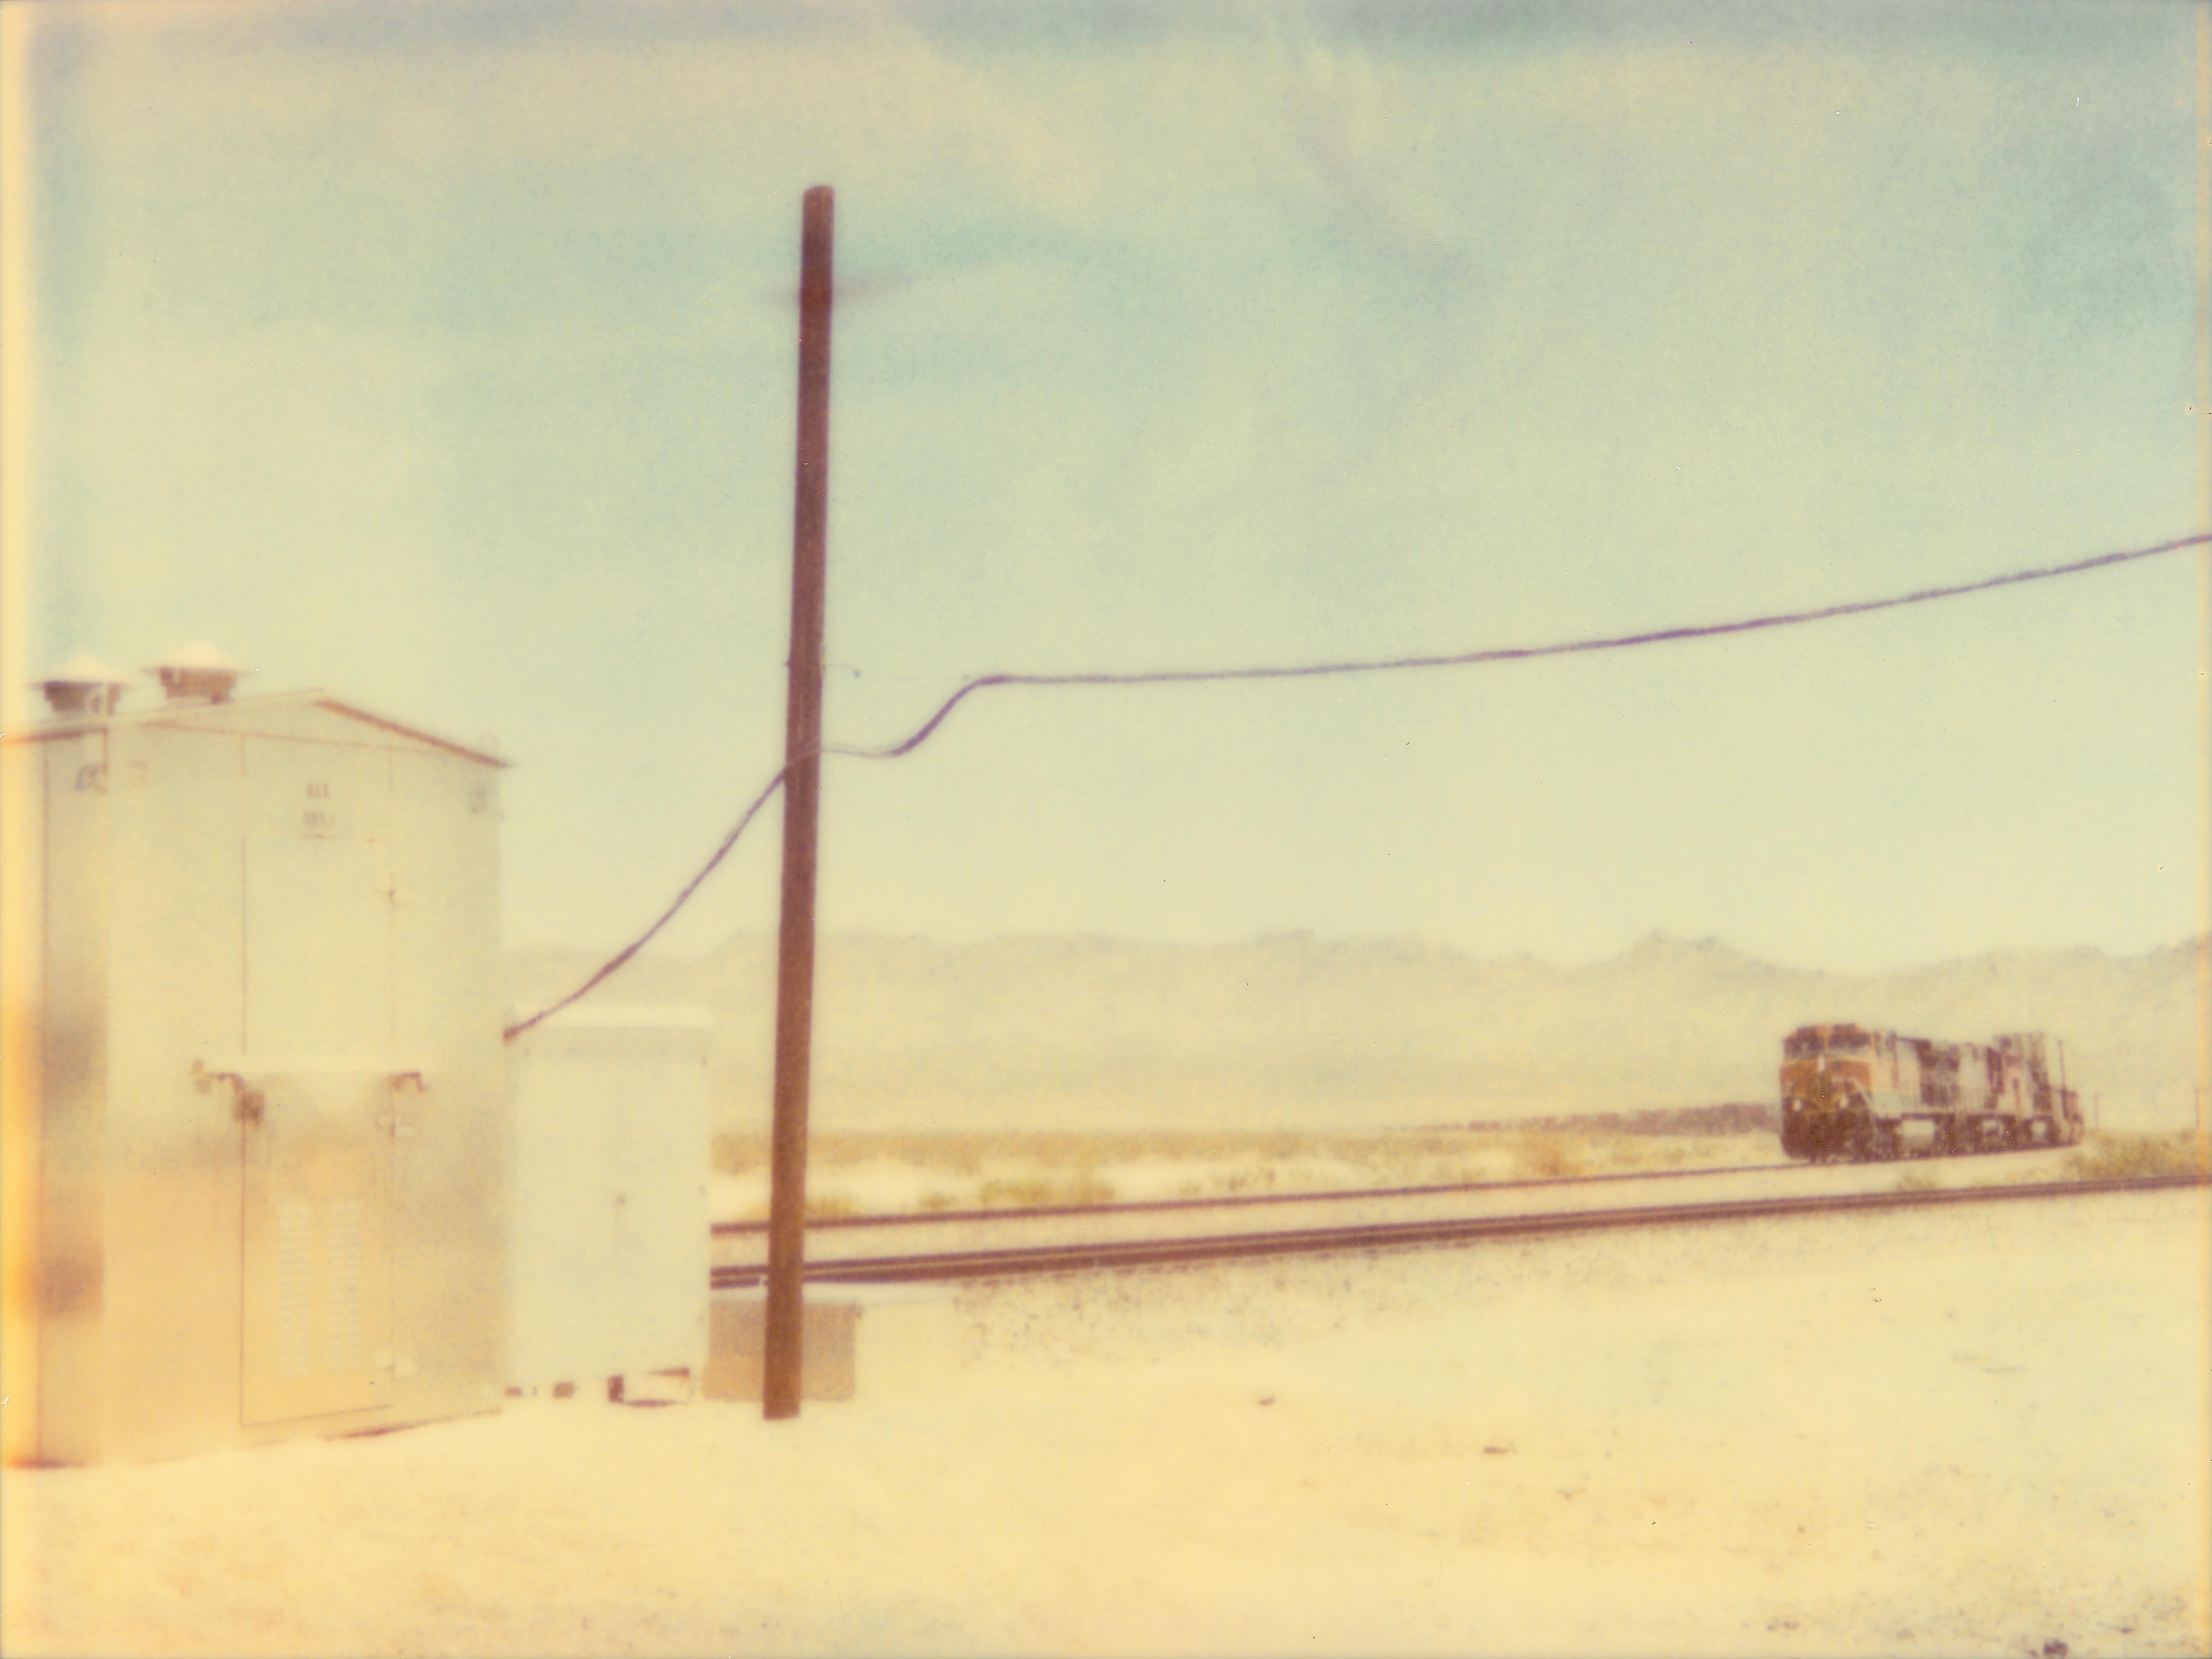 Stefanie Schneider Landscape Photograph – Approaching Train (Wastelands) - Zeitgenössisch, Landschaft, Polaroid, analog